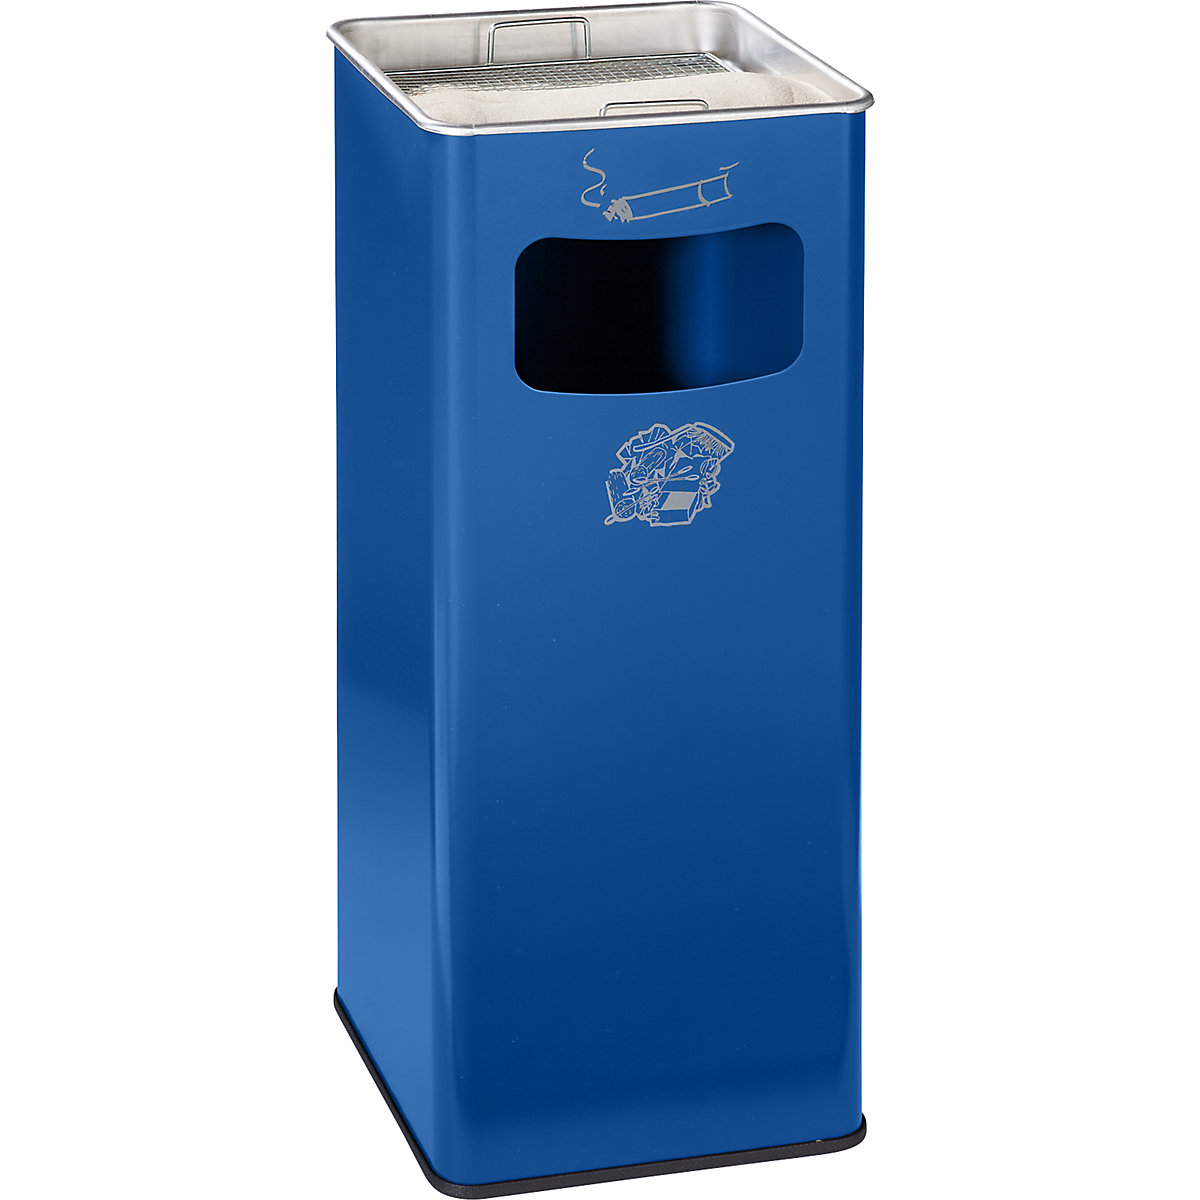 VAR – Combiné cendrier-poubelle, capacité 53 l, l x h x p 330 x 705 x 330 mm, tôle d'acier, bleu gentiane